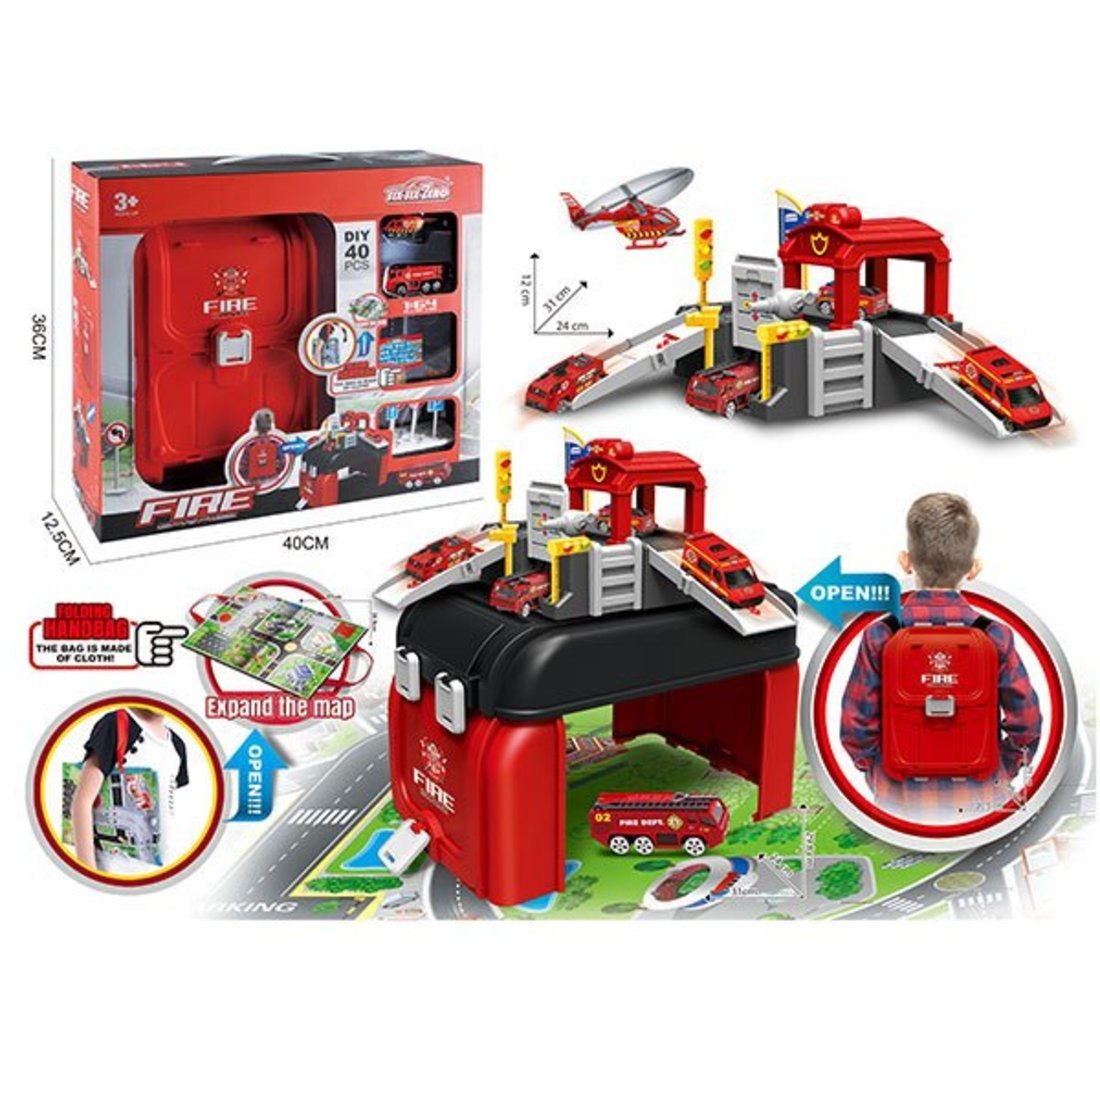 Игровой набор Пожарный, в комплекте деталей/предметов 40шт., в том числе транспорт 2шт., коробка